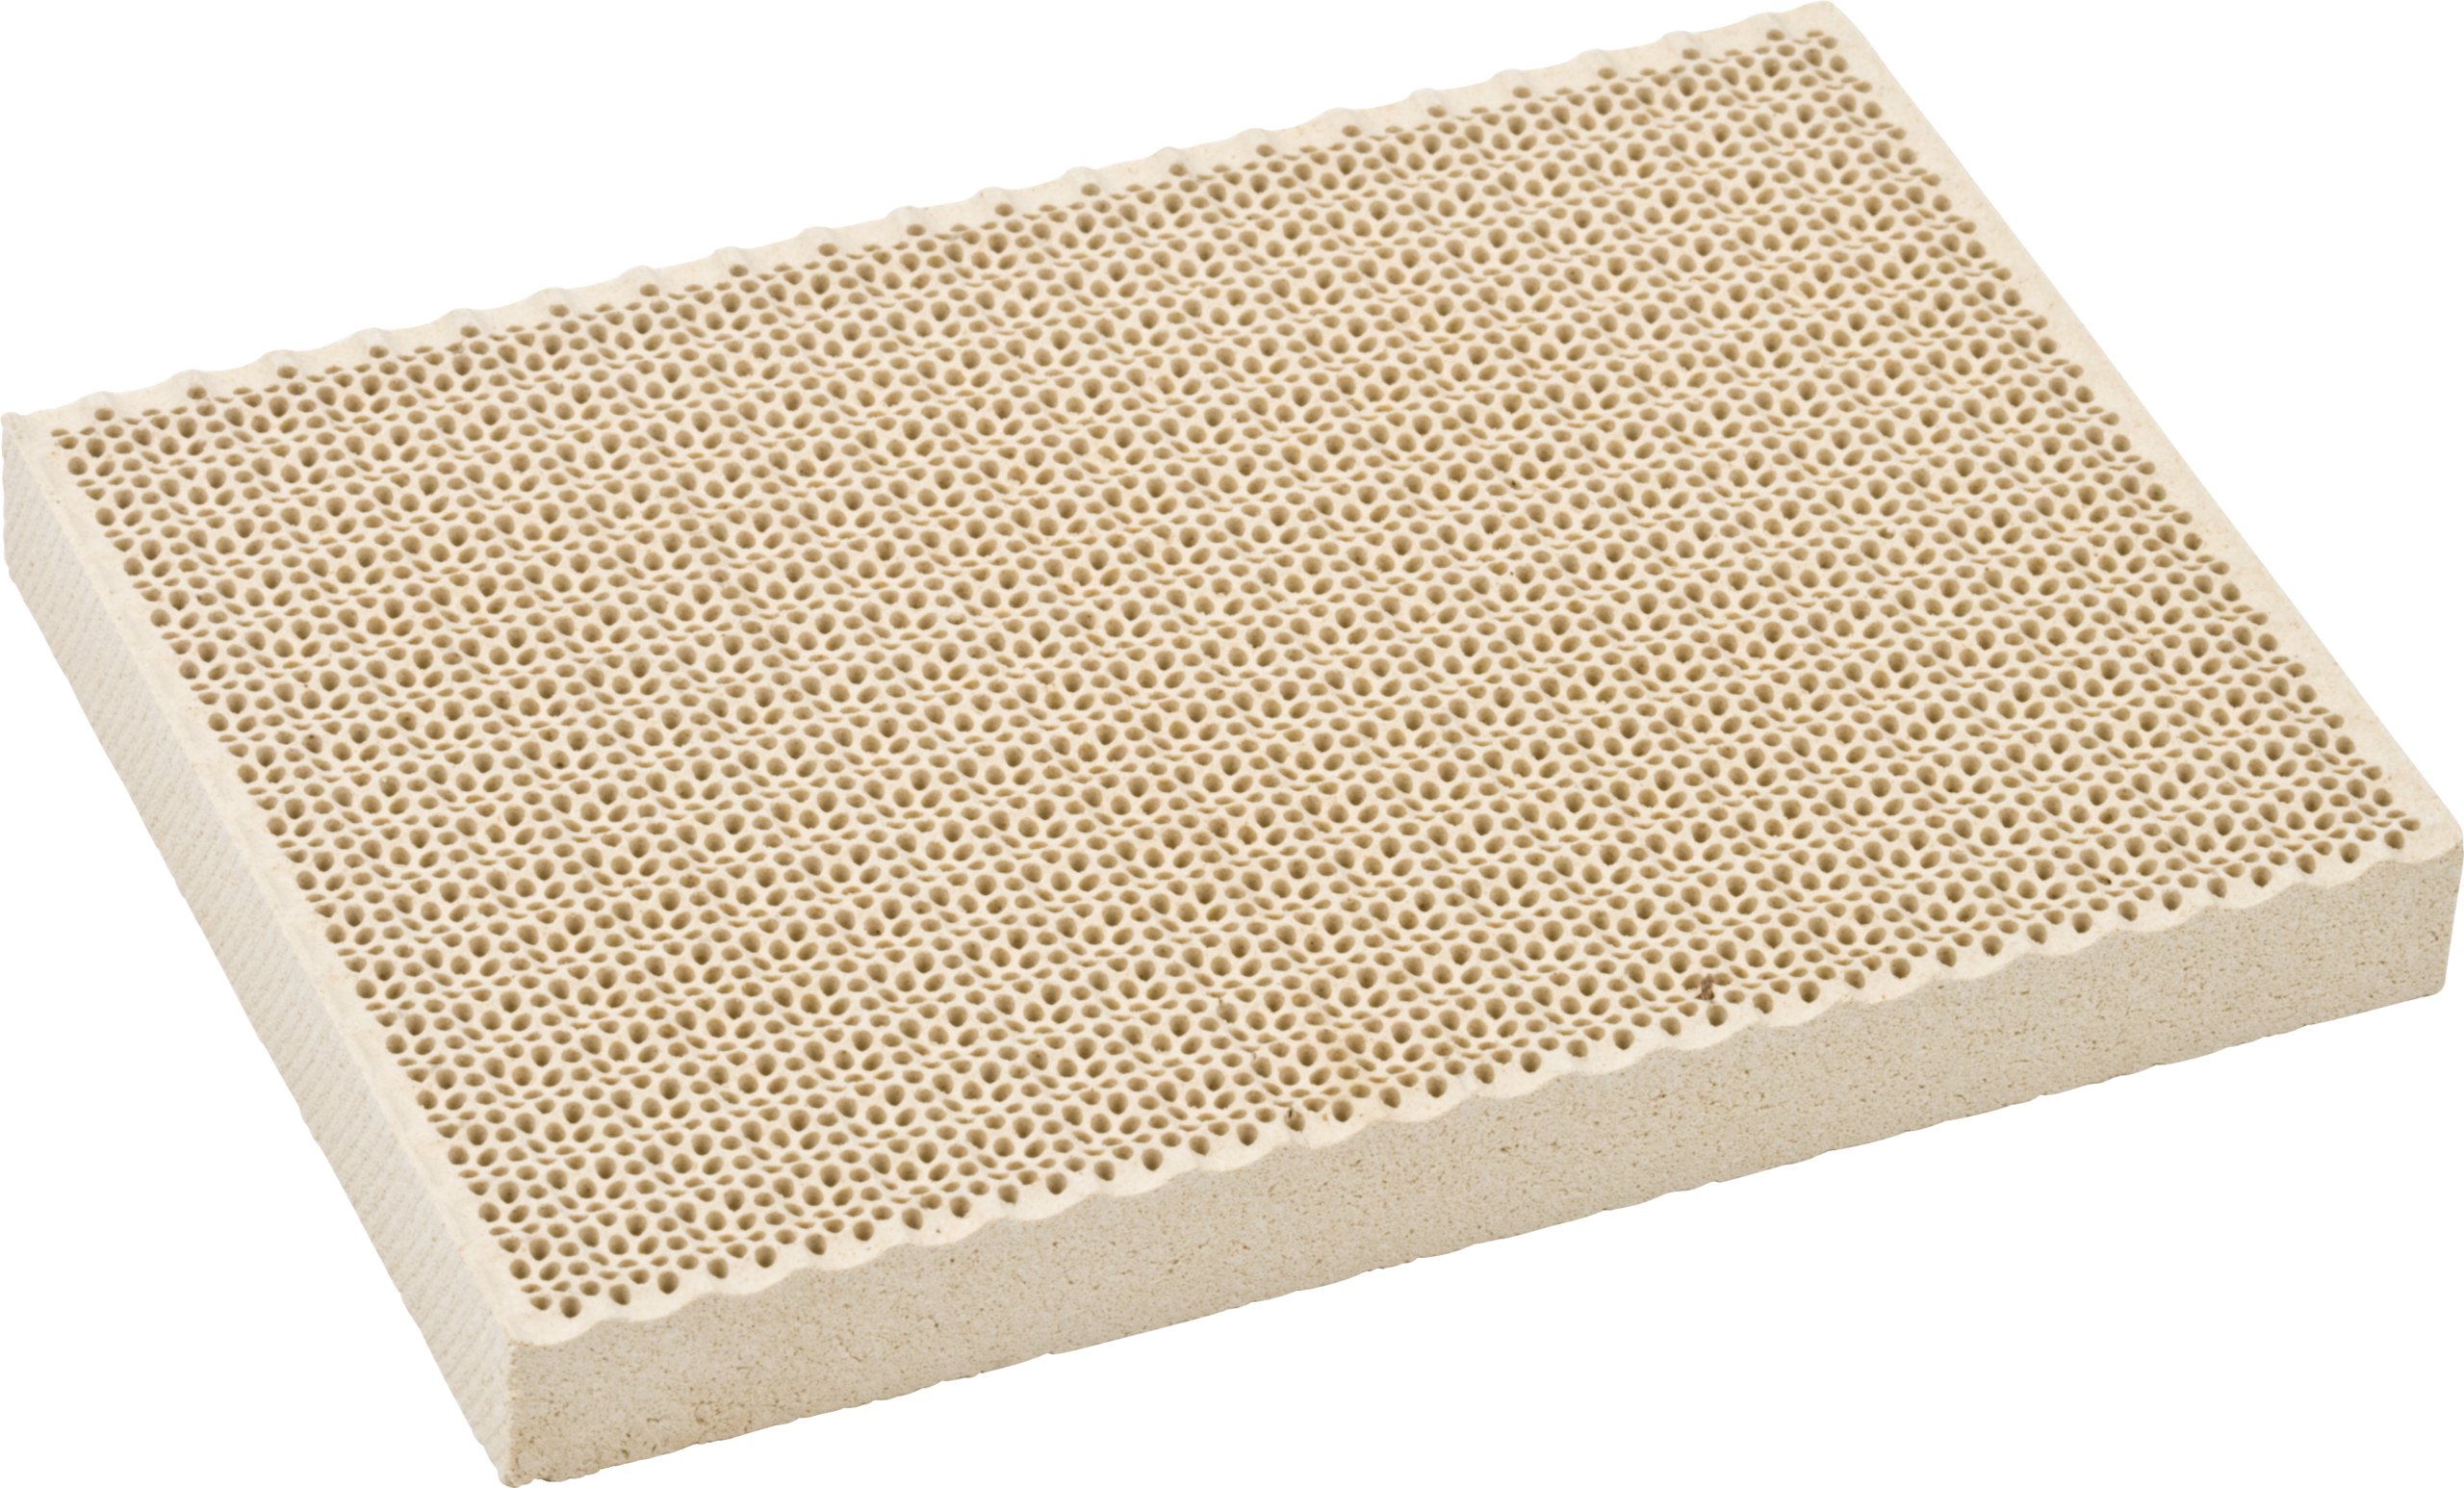 3 3/4 x 5 1/2 x 1/2 Ceramic Honeycomb Design Soldering Block